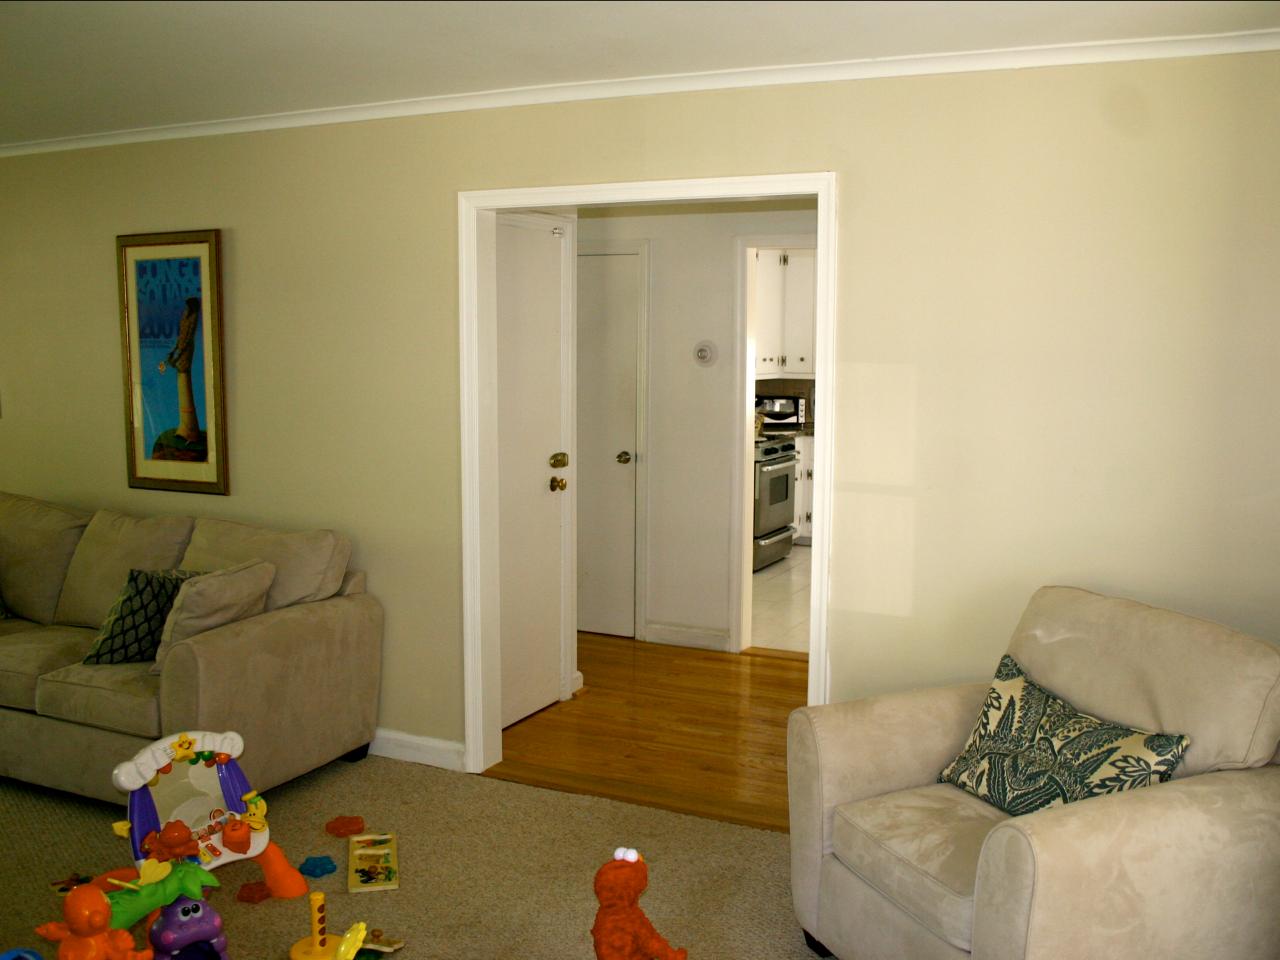 living room with doorway